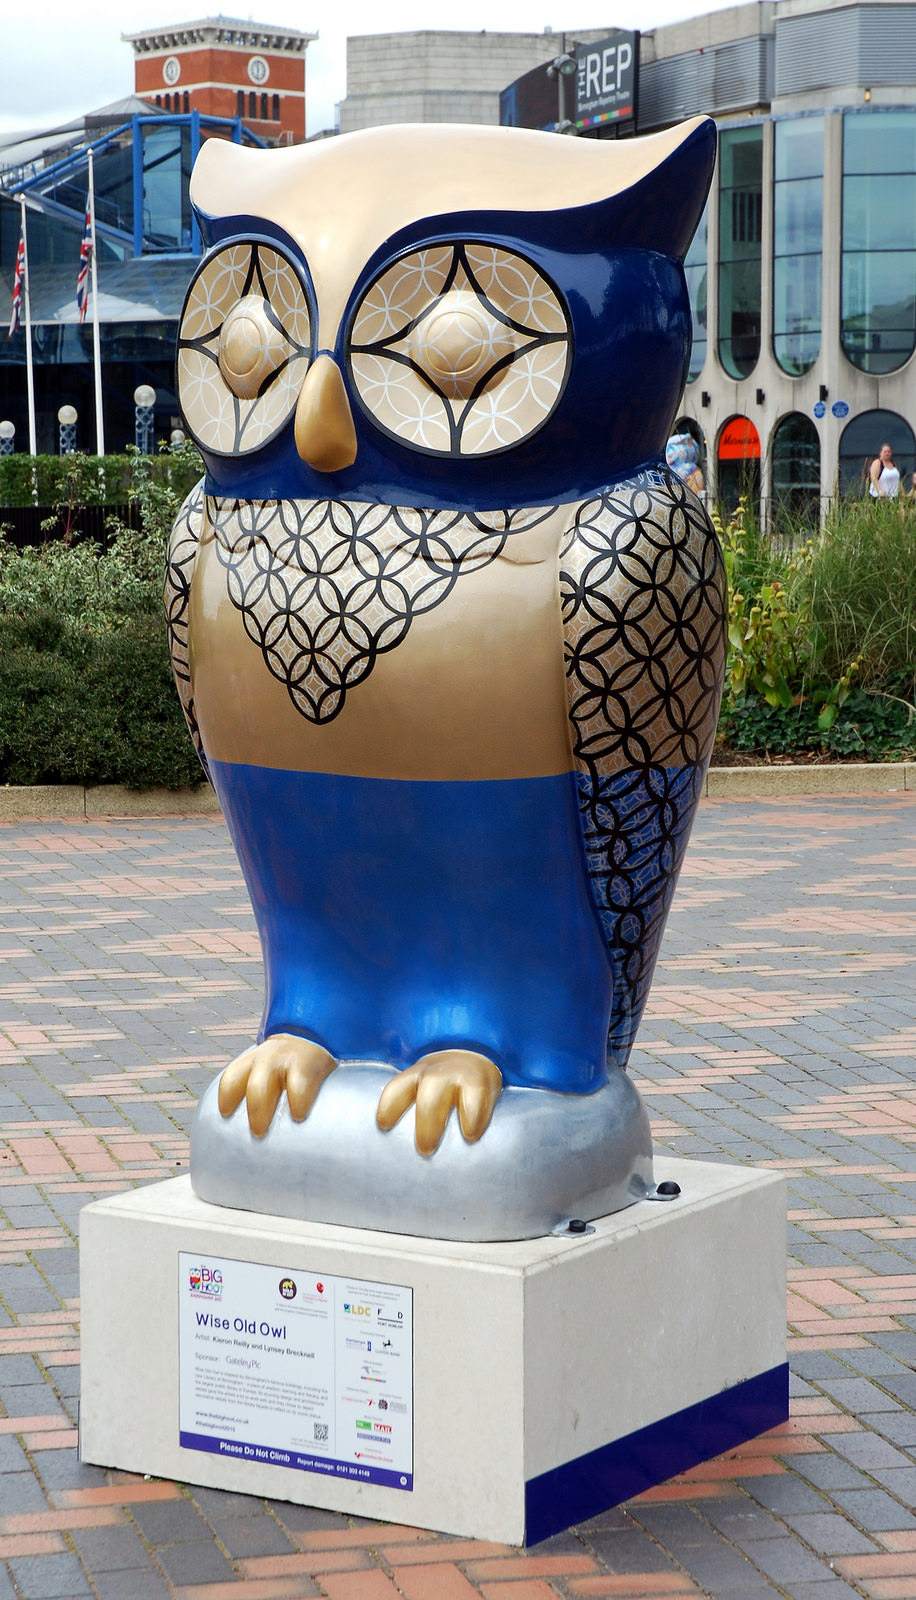 big hoot15 The 2015 Big Hoot Owls in Birmingham